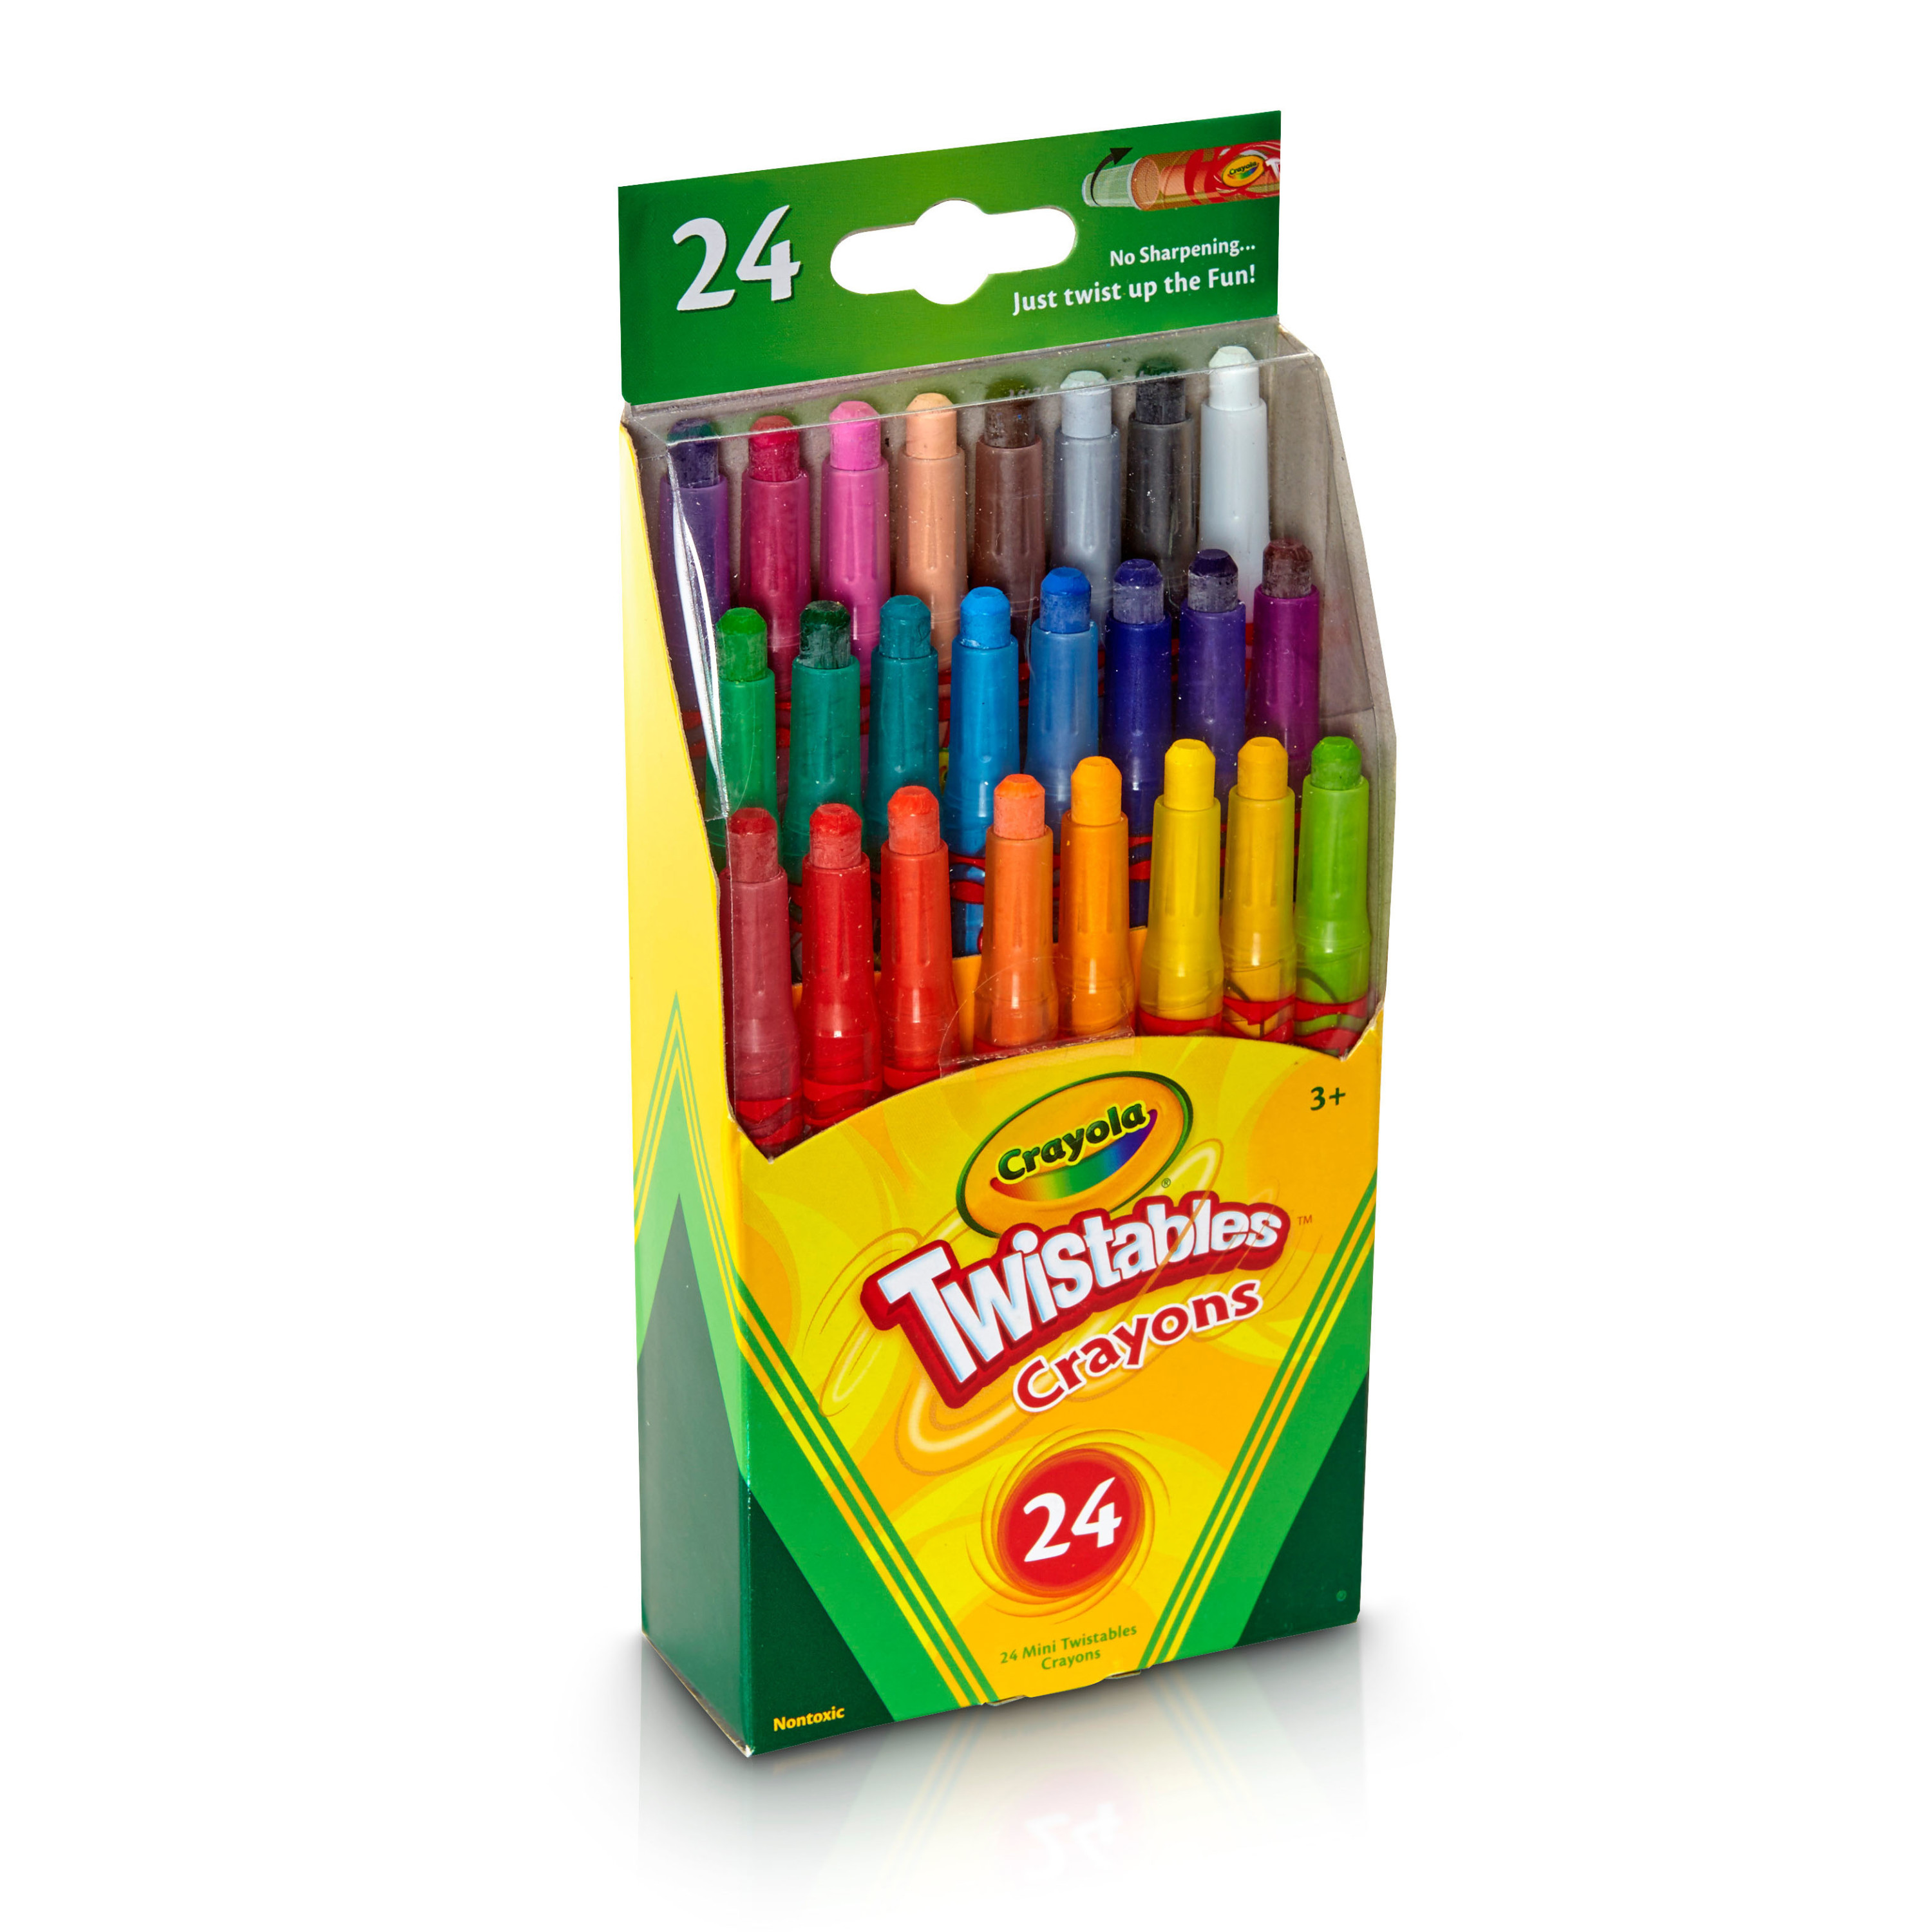 Crayola Twistables Mini Crayon Set, 24 Ct, Back to School Supplies, Multi-Color - image 3 of 5